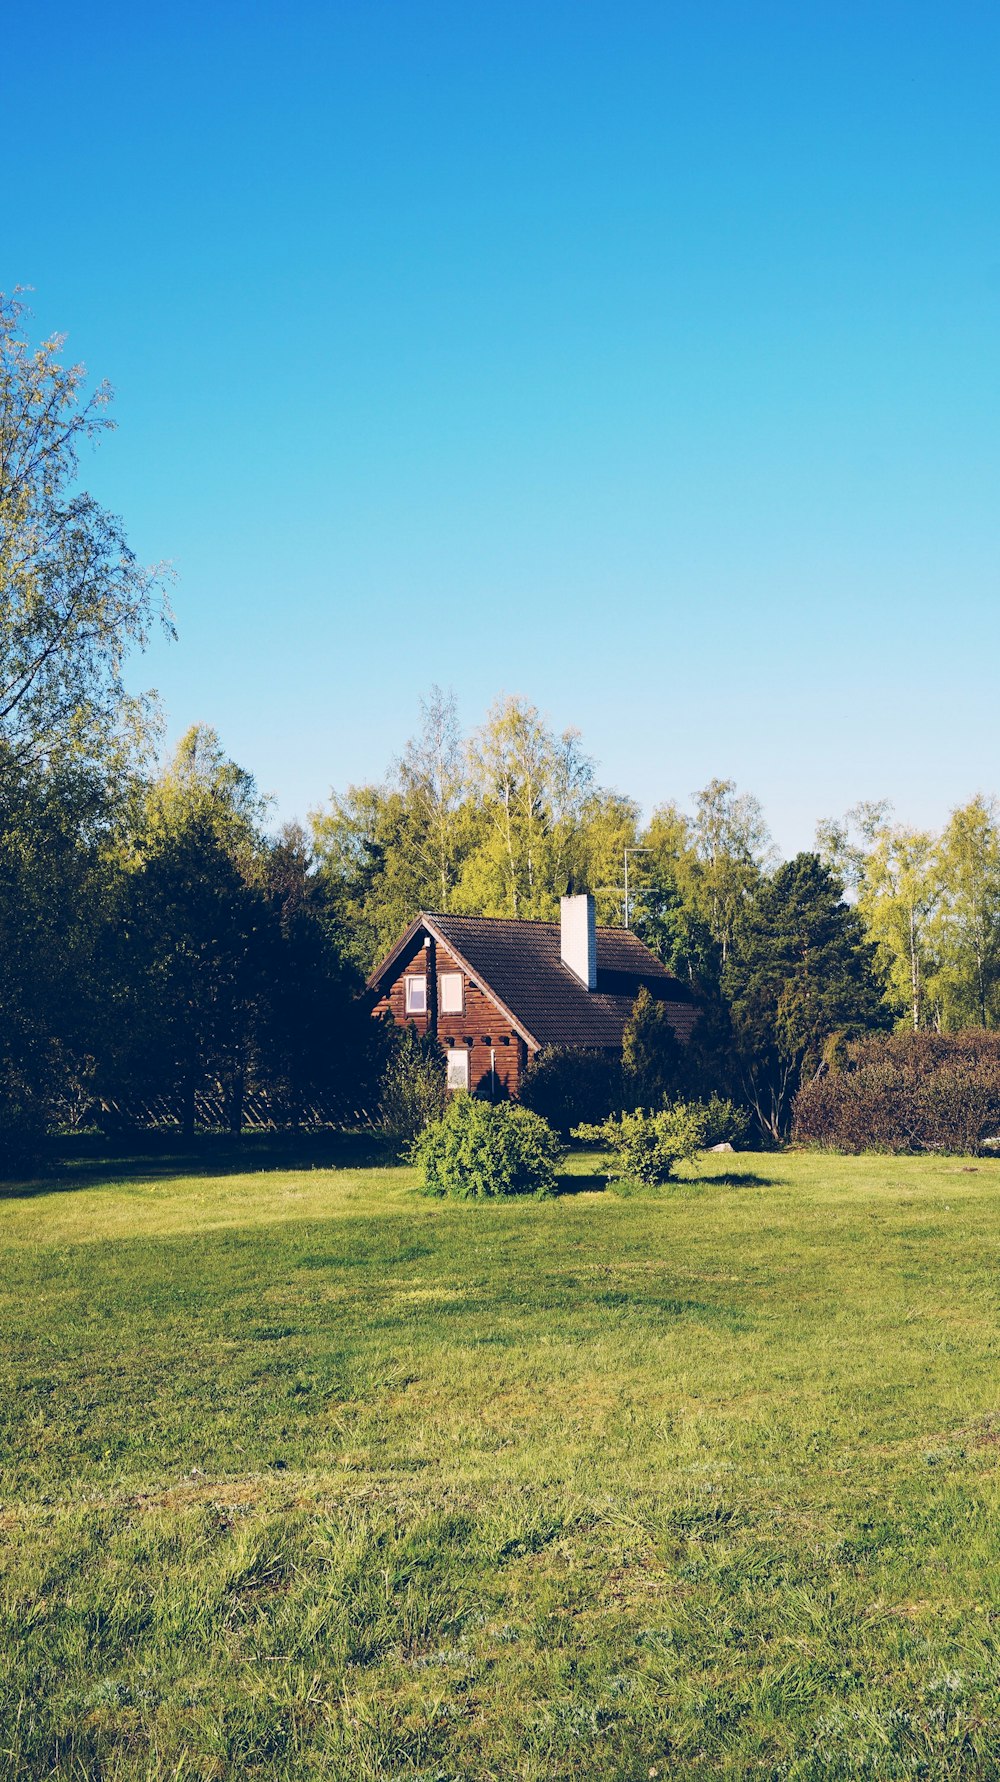 casa de madeira marrom no campo de grama verde perto de árvores verdes sob o céu azul durante o dia